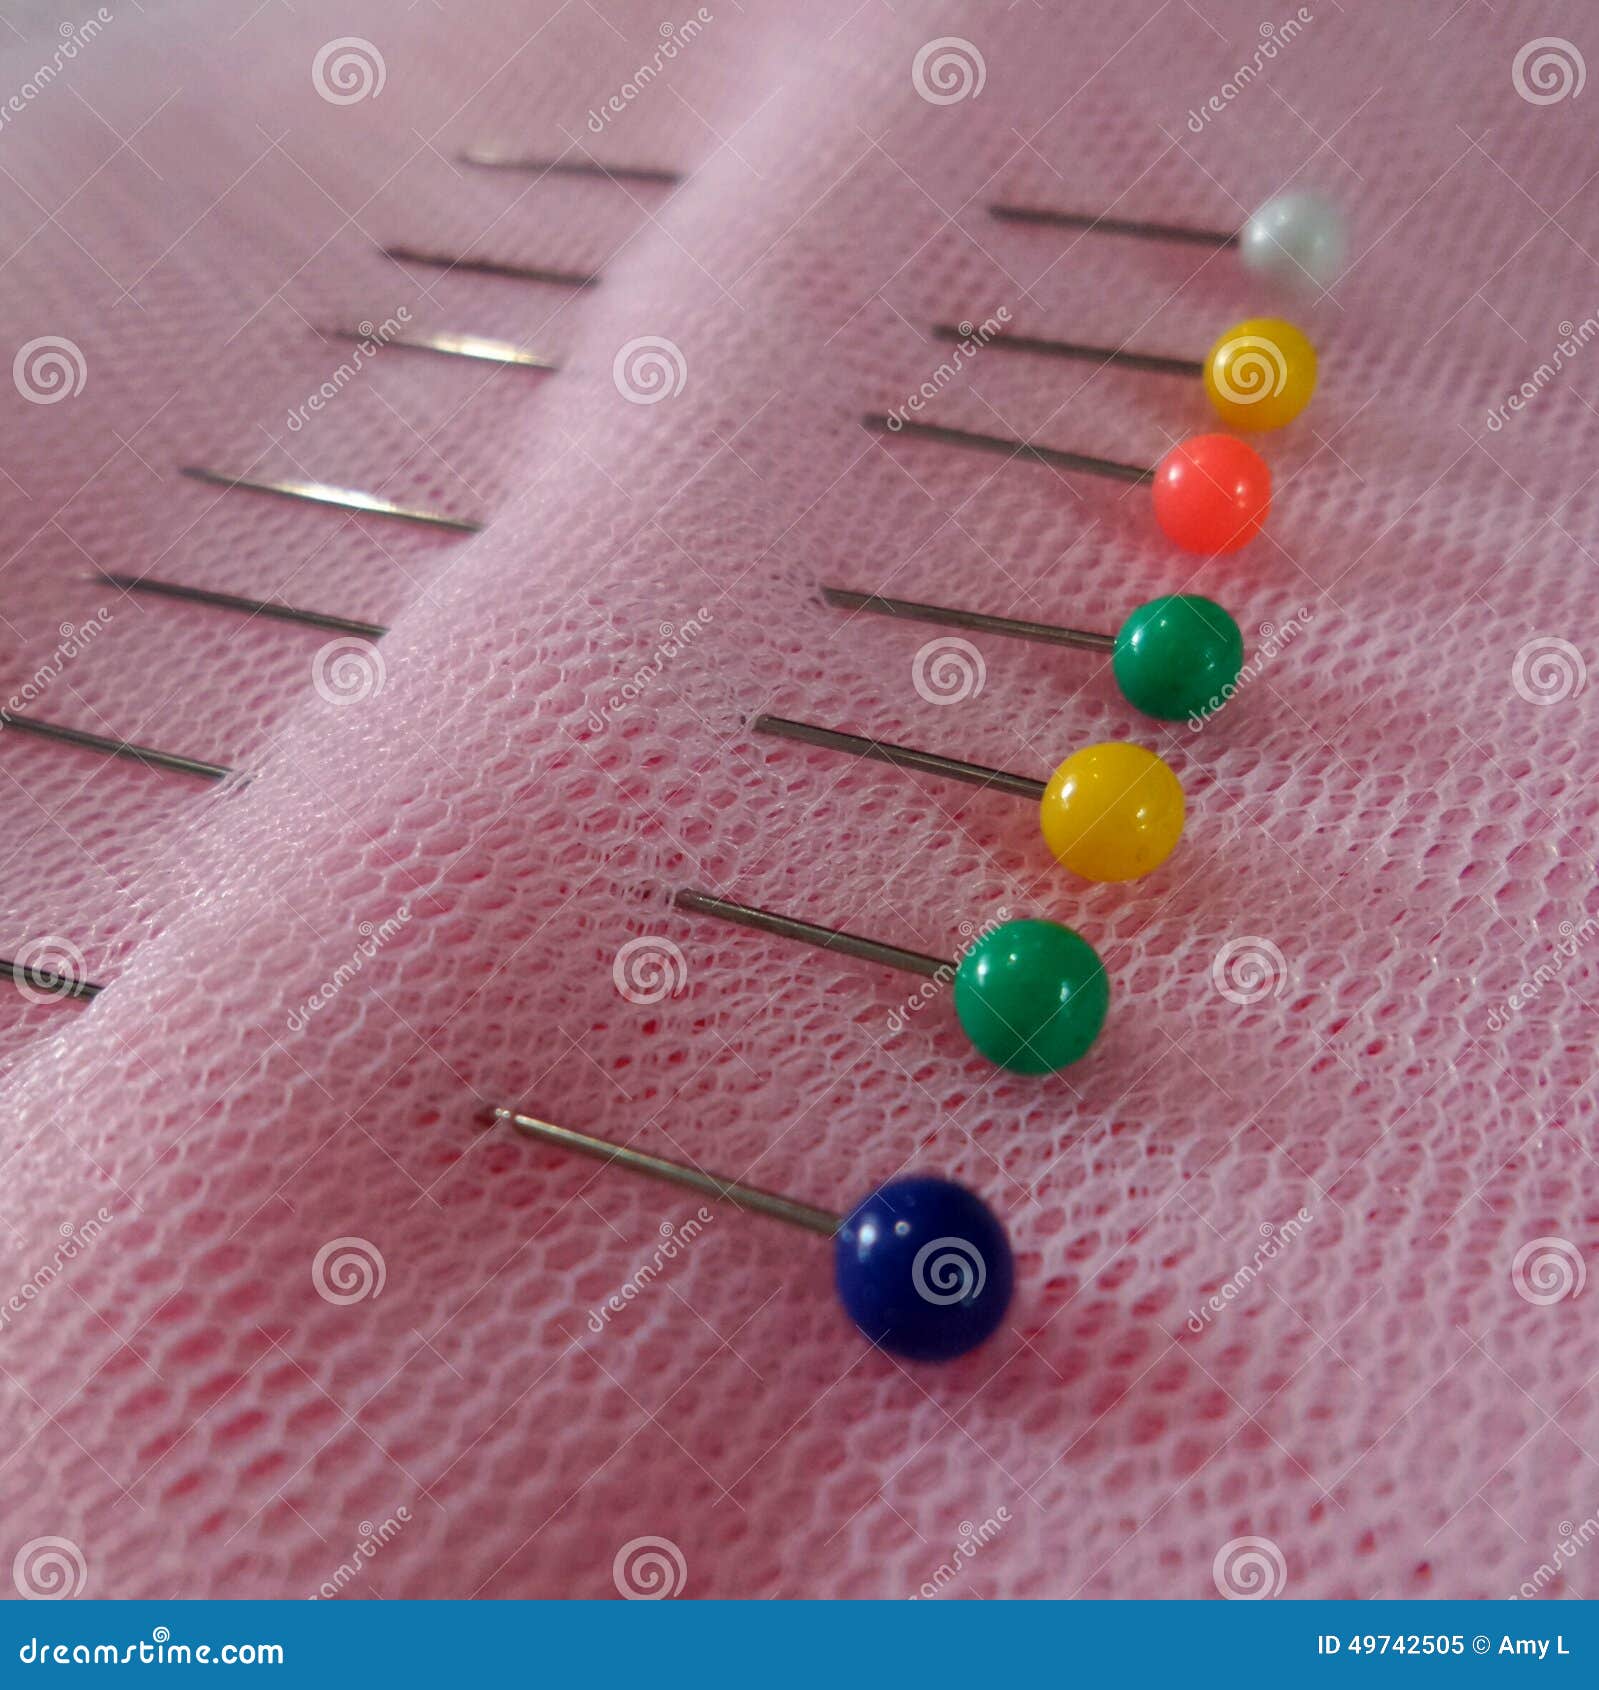 Pin needles pins stock image. Image of fabric, pins, needles - 49742505